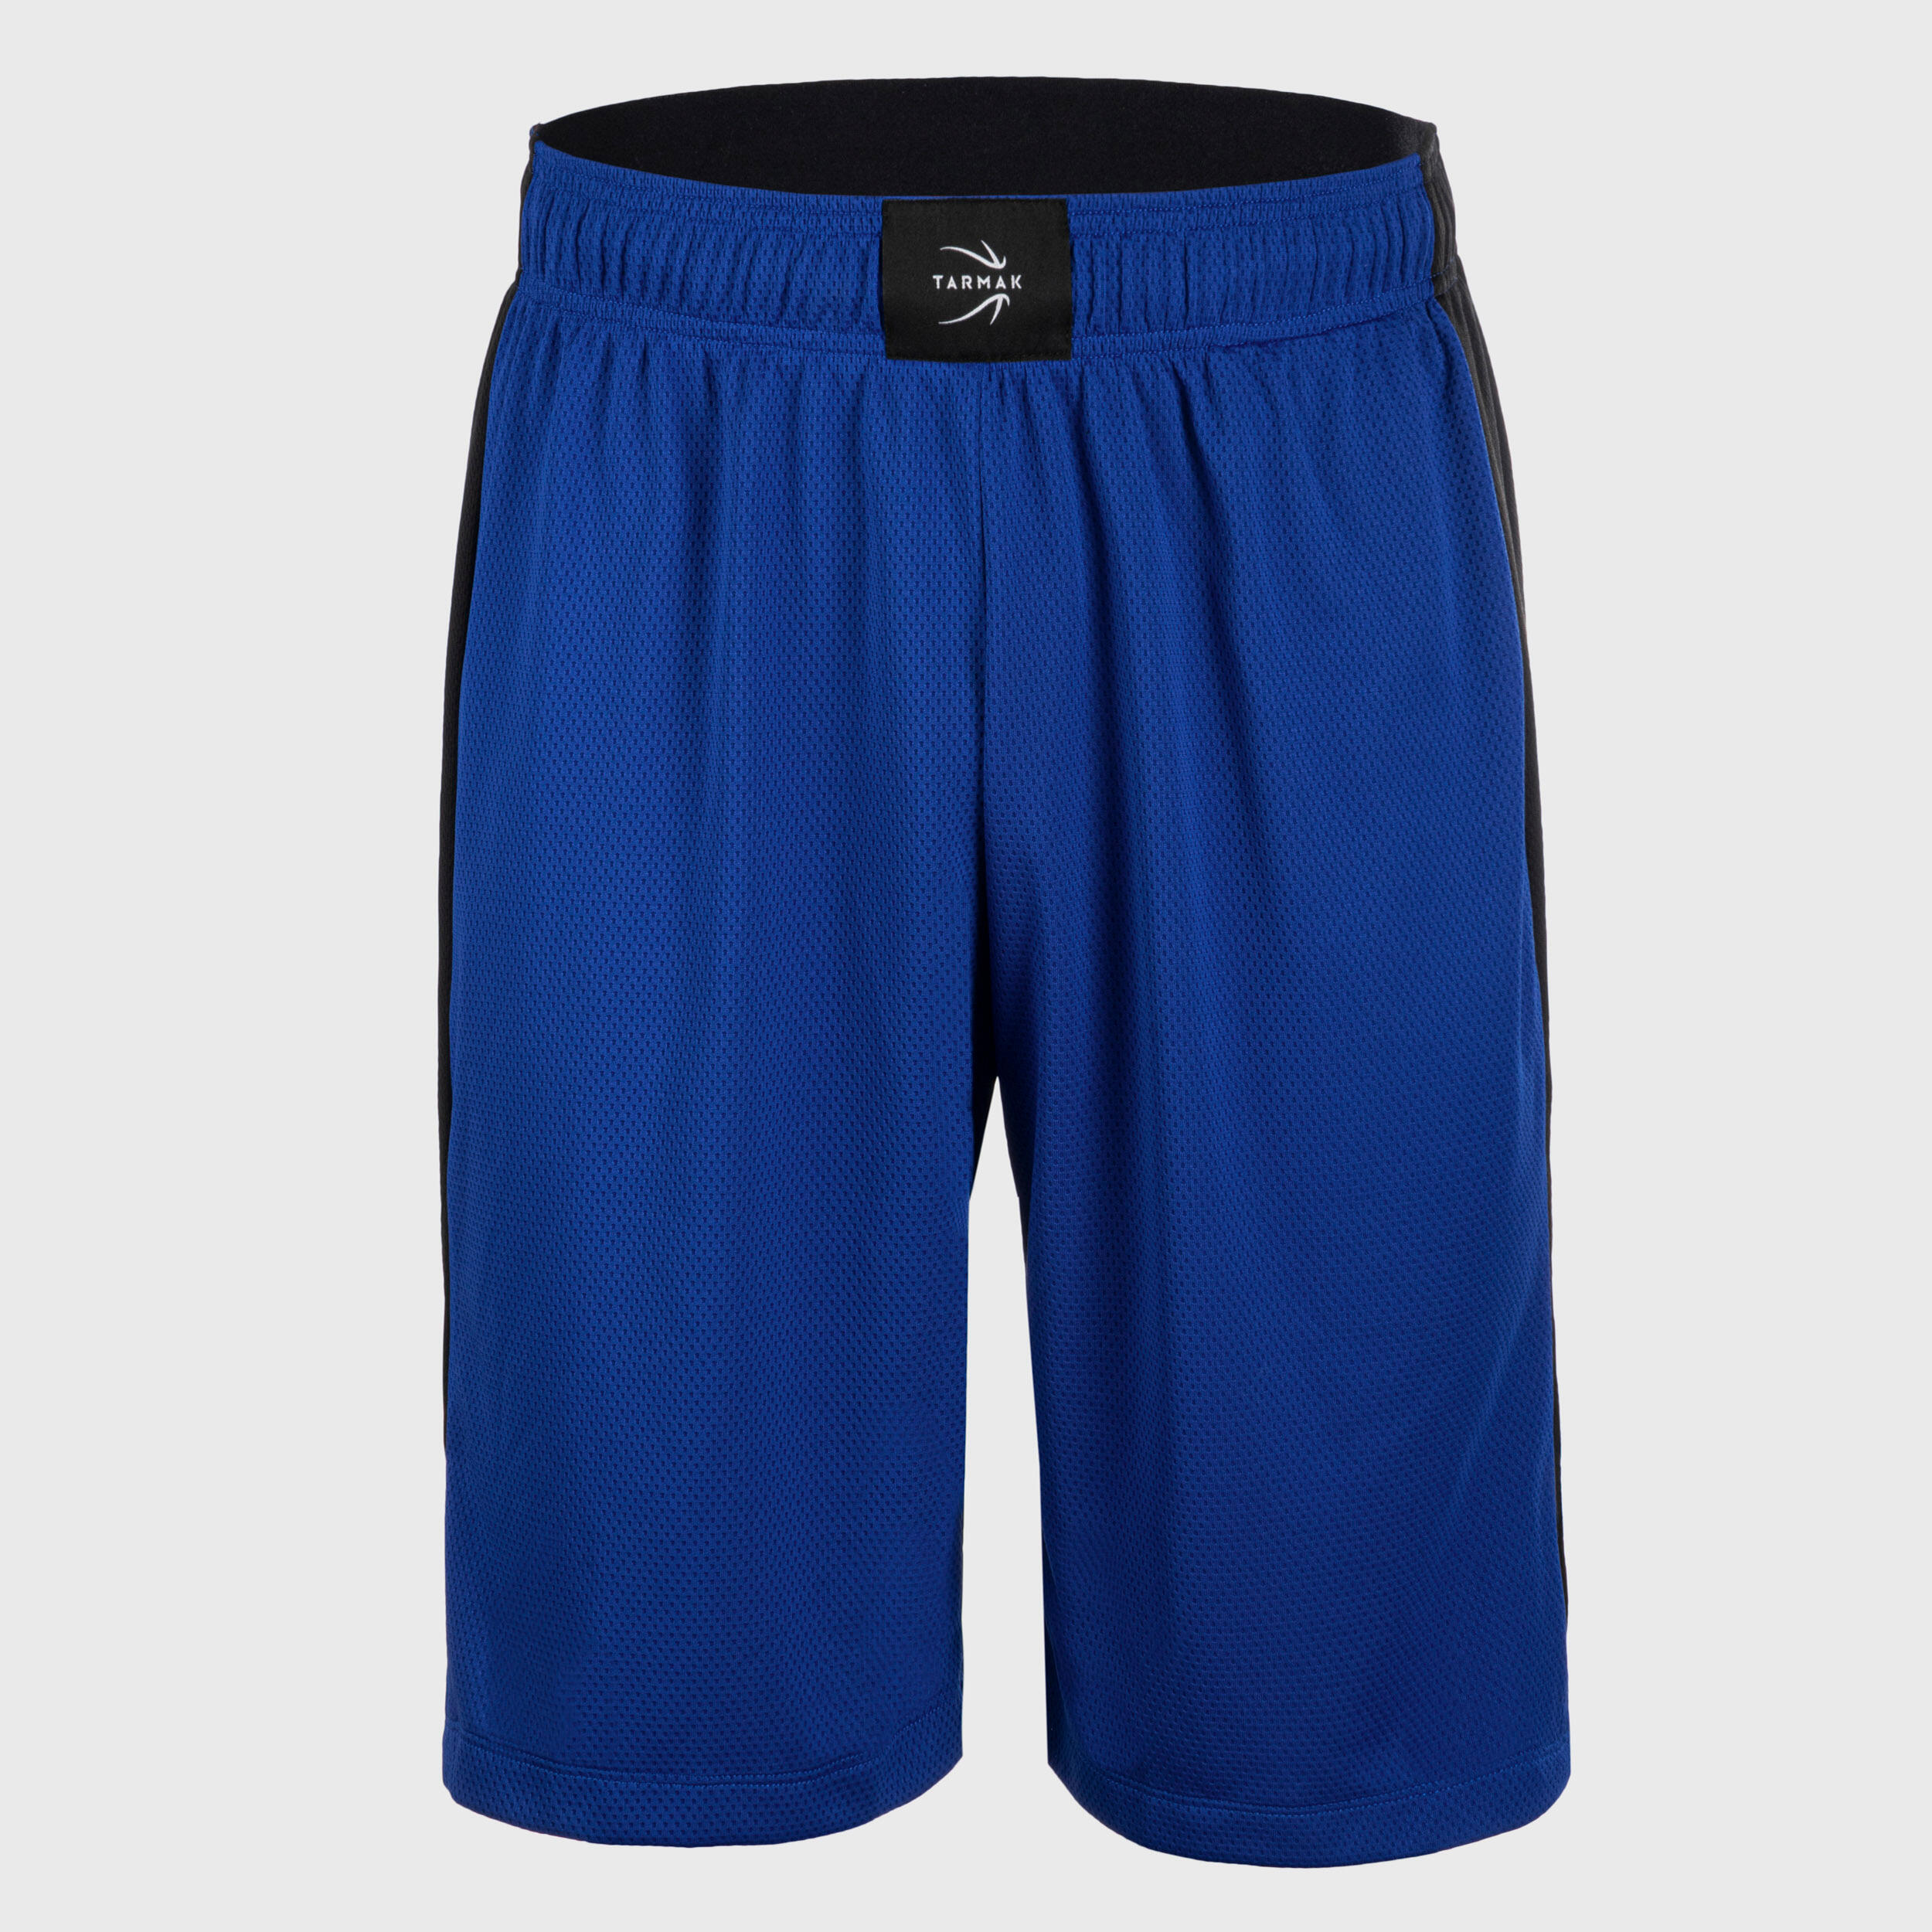 TARMAK Men's/Women's Basketball Shorts SH500 - Blue/Black